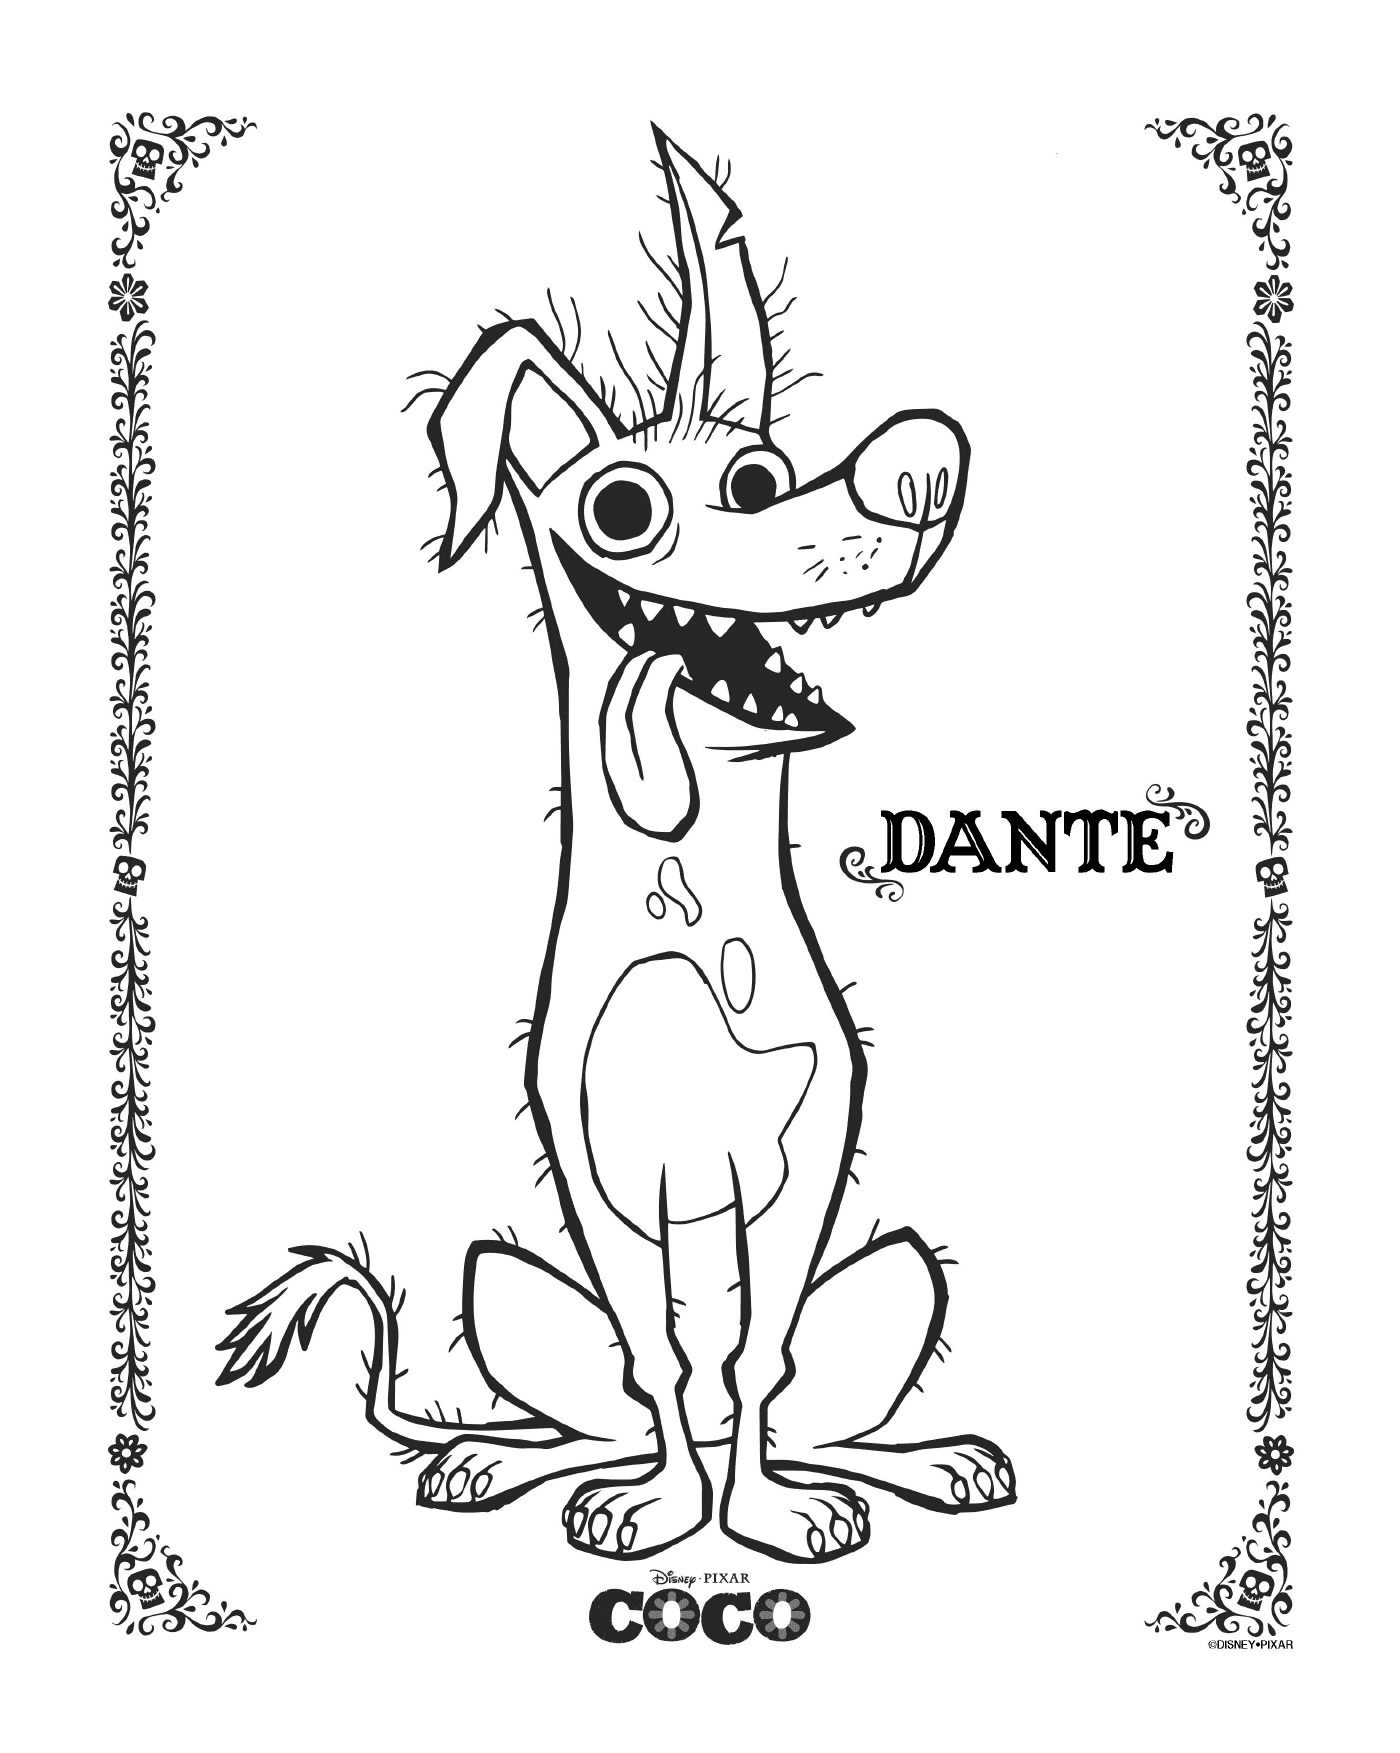  Dante en Coco, Disney 